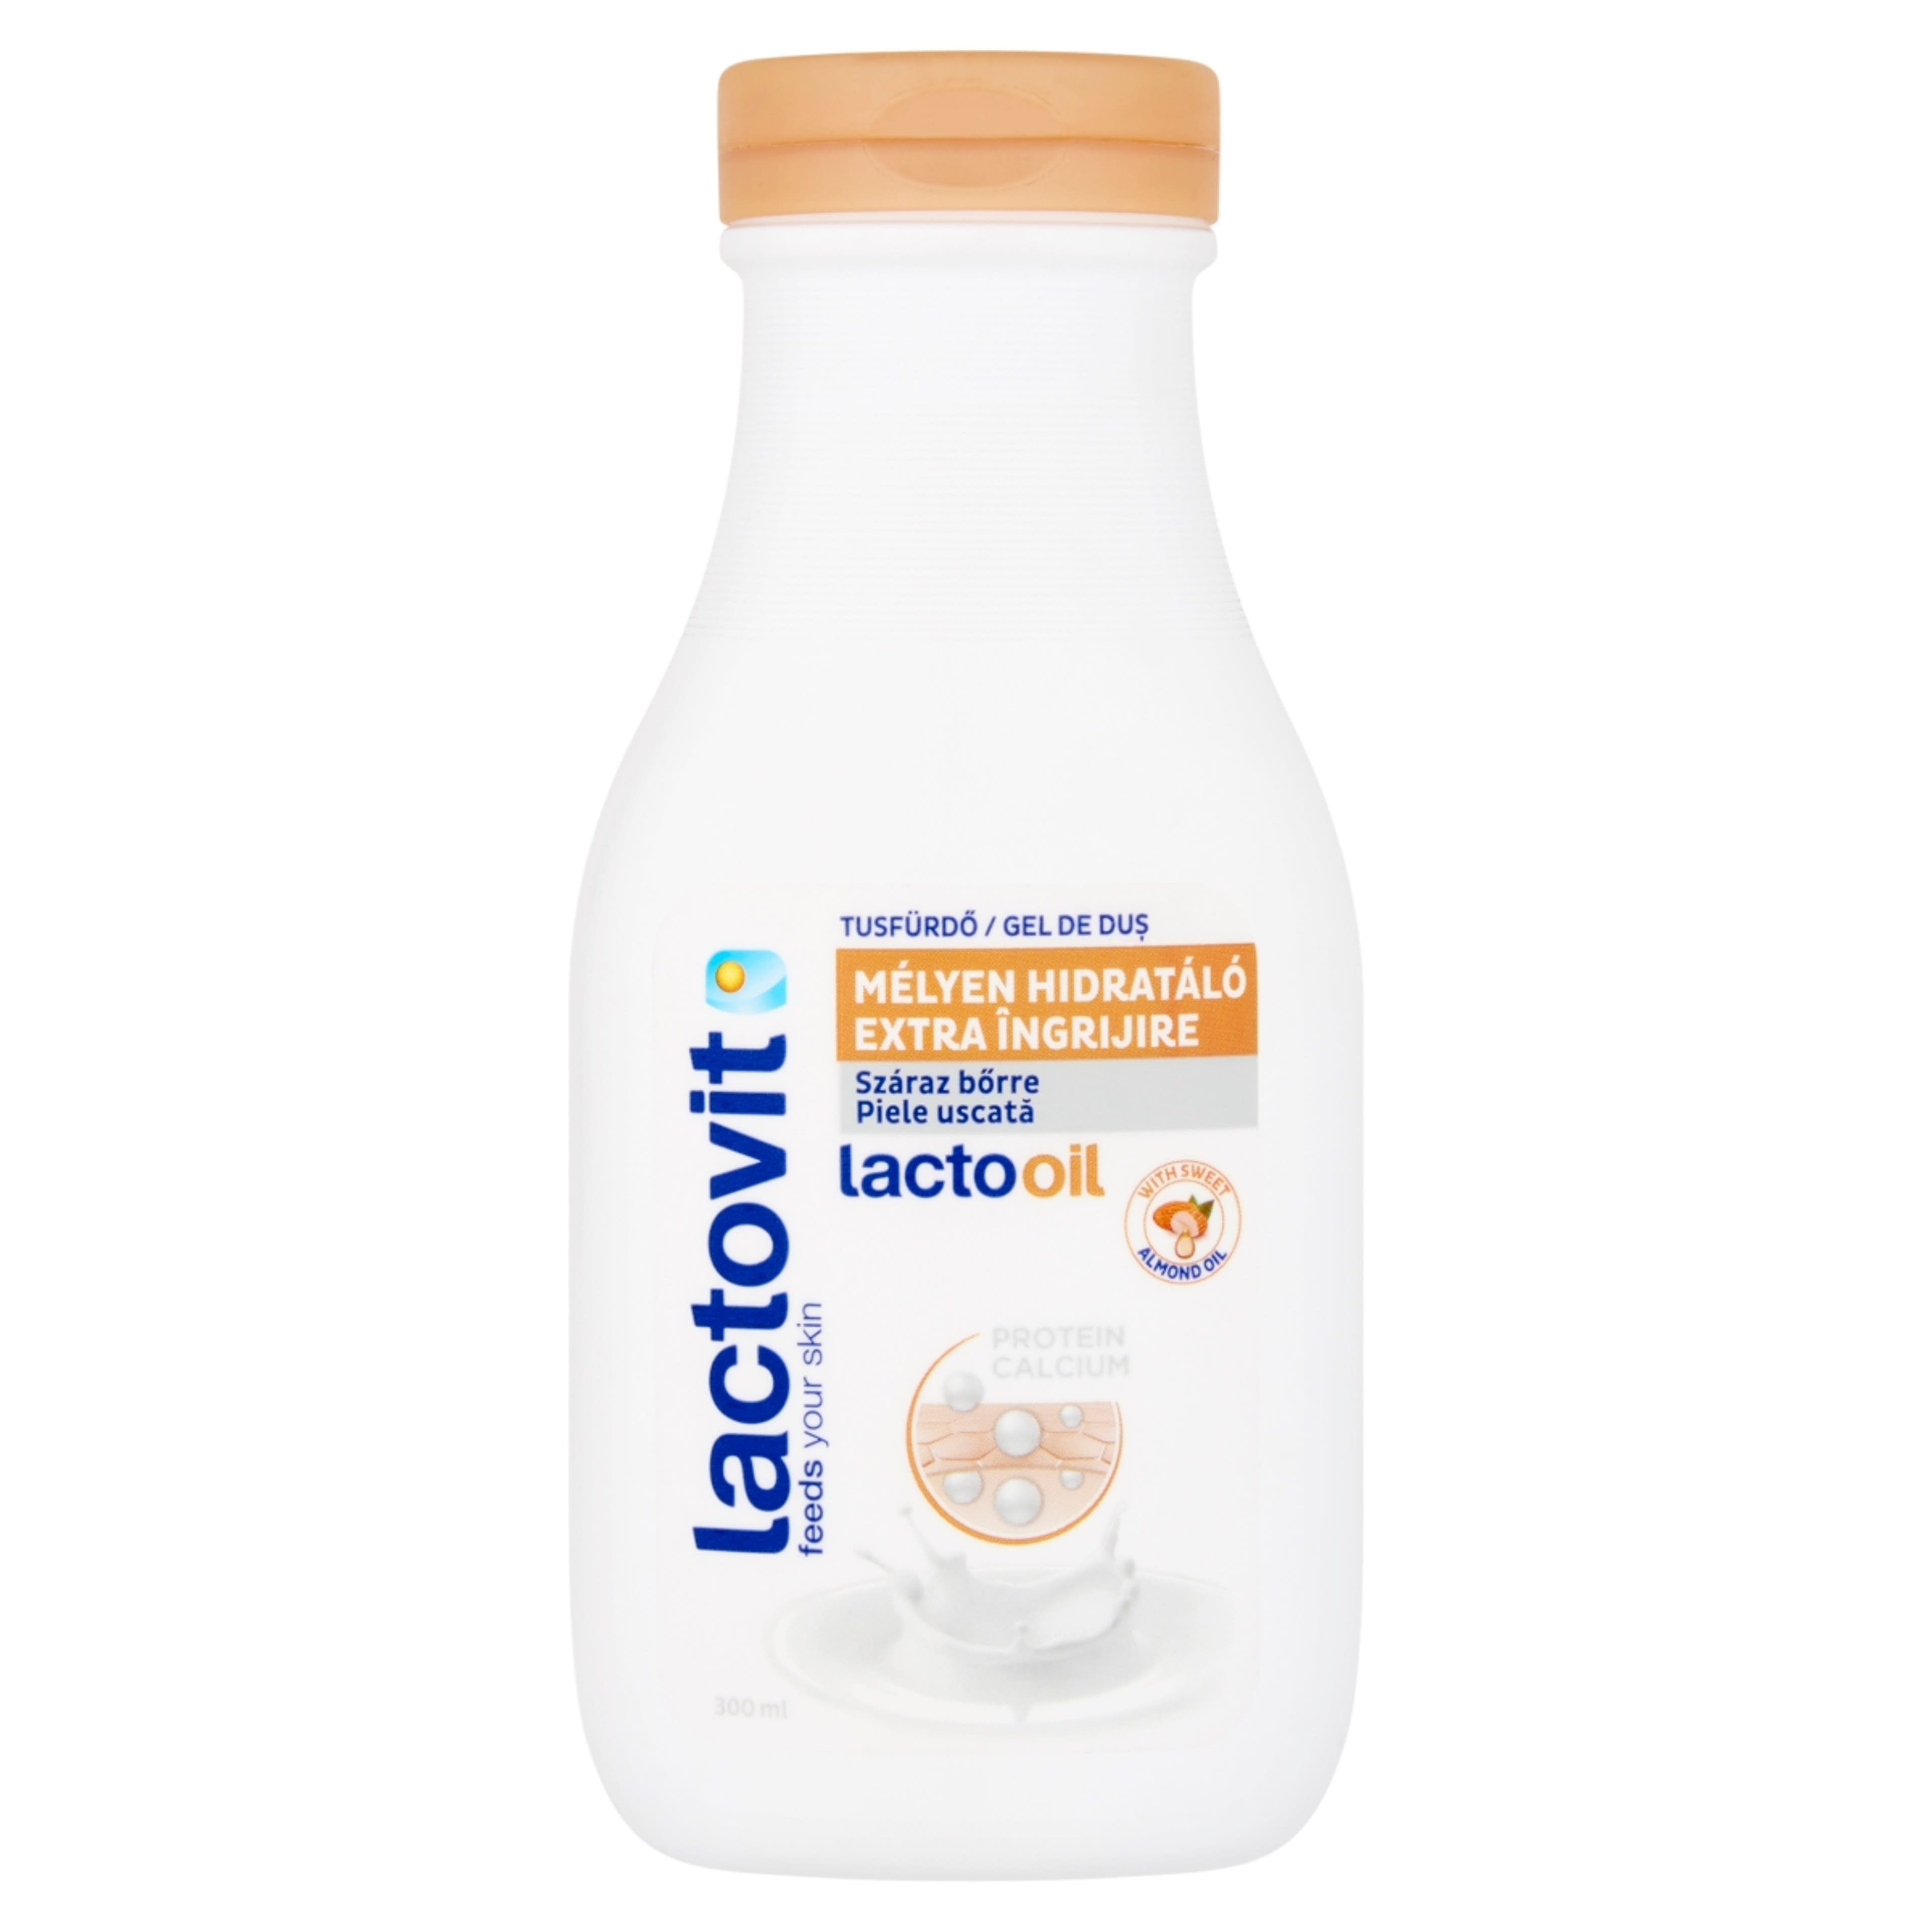 Lactovit tusfürdő Lactooil - 300 ml-2